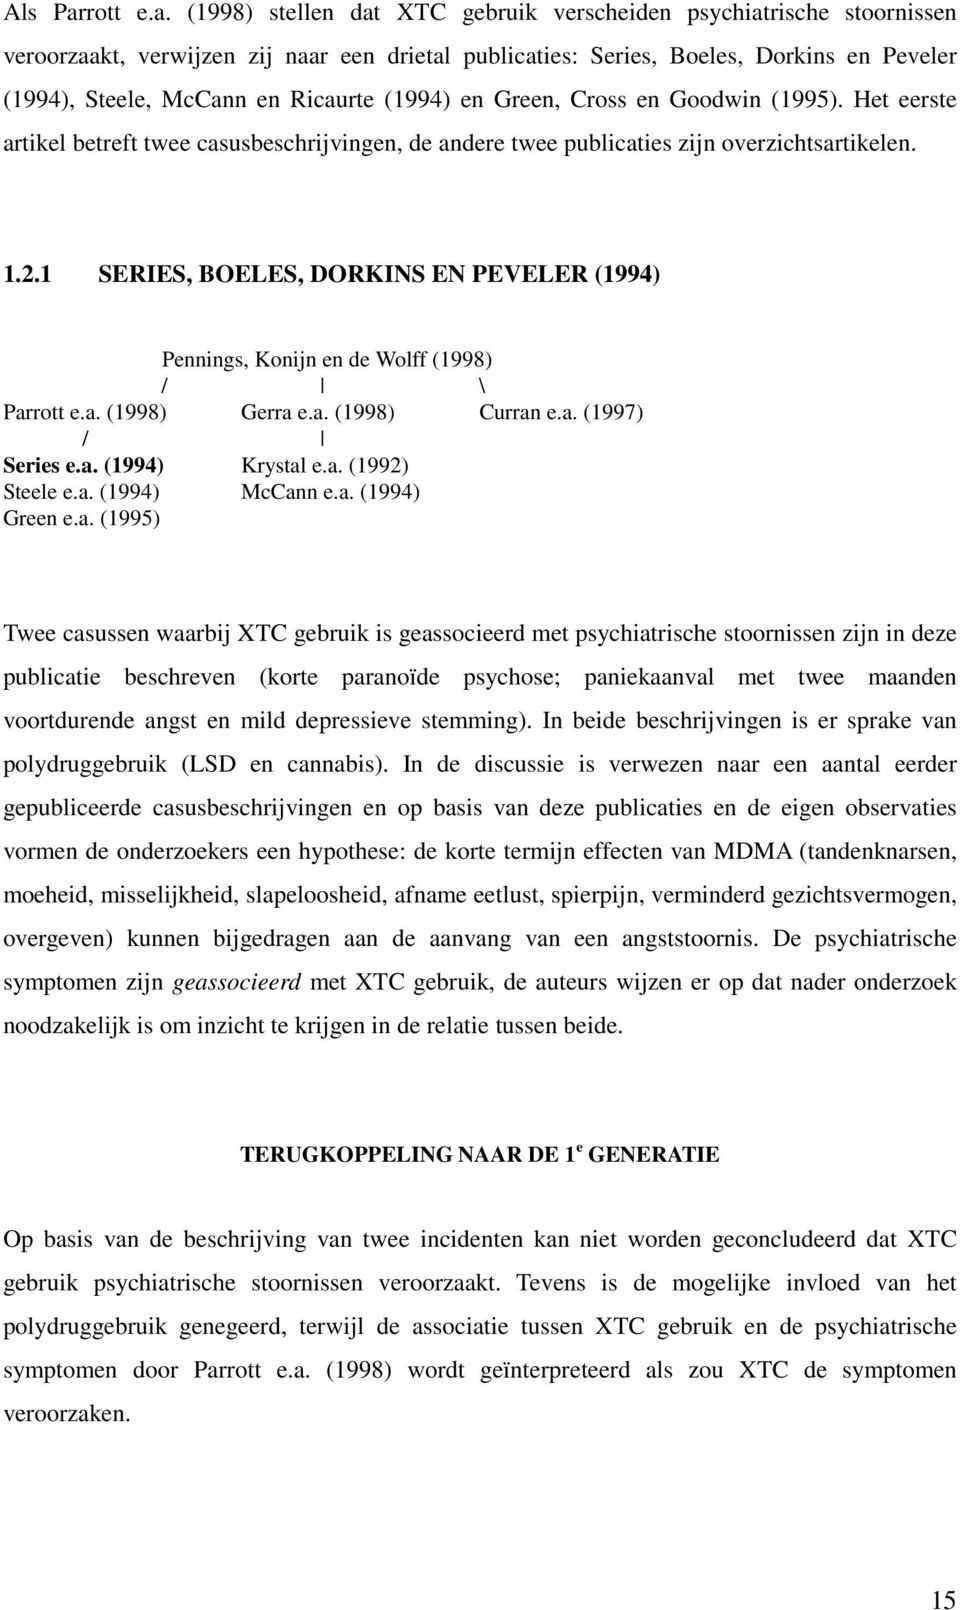 (1998) stellen dat XTC gebruik verscheiden psychiatrische stoornissen veroorzaakt, verwijzen zij naar een drietal publicaties: Series, Boeles, Dorkins en Peveler (1994), Steele, McCann en Ricaurte